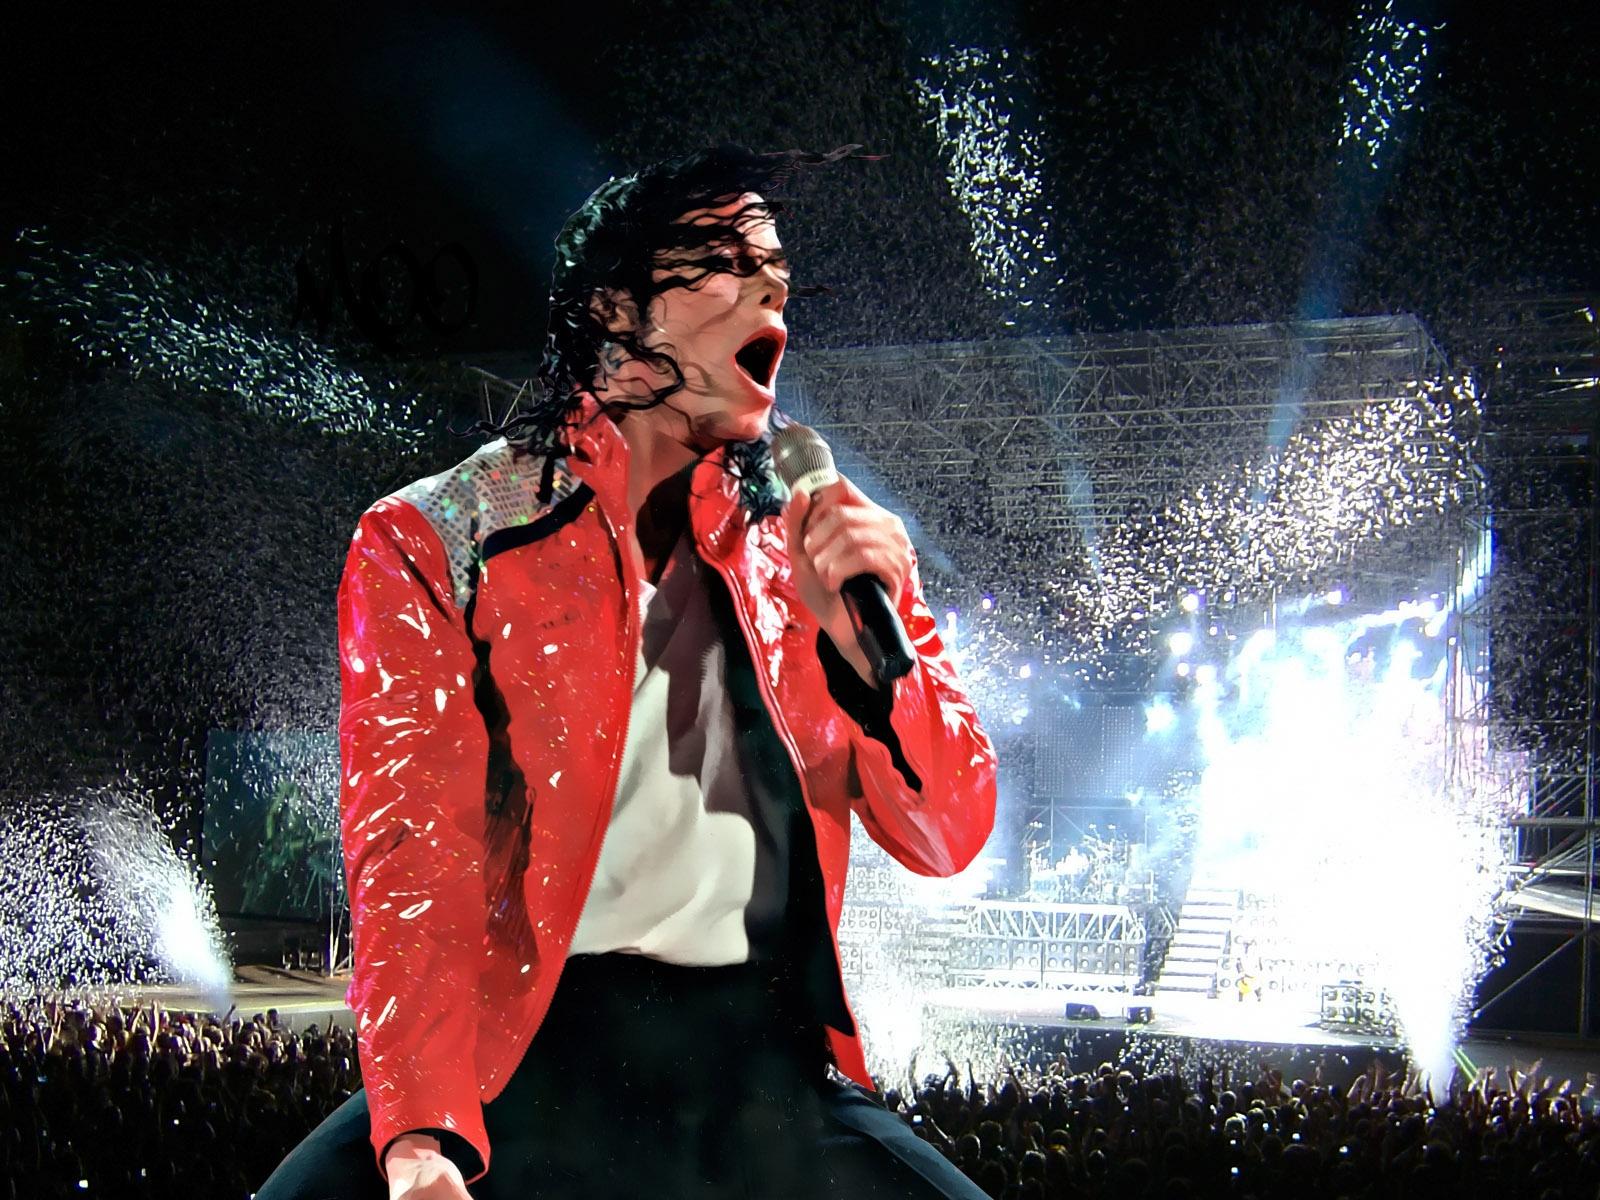 Baixe gratuitamente a imagem Música, Michael Jackson na área de trabalho do seu PC